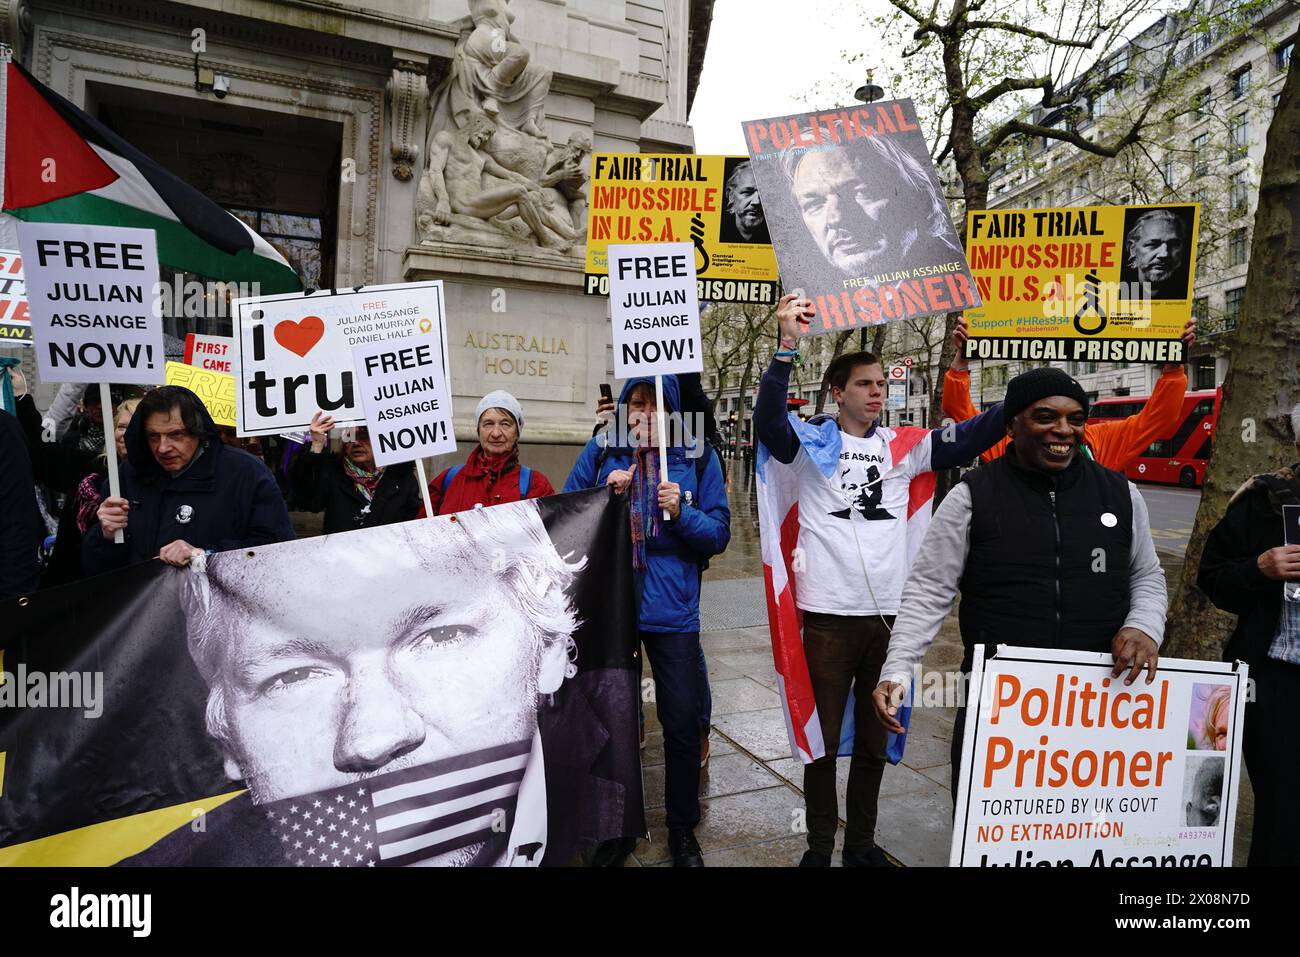 REKORDDATUM NICHT ANGEGEBEN Protest zum 5. Jahrestag der Inhaftierung von Julian Assanges in London das Komitee zur Verteidigung von Julian Assange trifft sich im Australia House, um den 5. Jahrestag der Inhaftierung Julians im Belmarsh Gefängnis zu feiern. Die Versammlung lenkt die Aufmerksamkeit auf den anhaltenden Rechtsstreit und die Auswirkungen auf die Pressefreiheit und die Menschenrechte. Anhänger von Assange, der seit mehr als einem Jahrzehnt inhaftiert ist, betonen die Notwendigkeit journalistischer Schutzmaßnahmen und des Rechts der Öffentlichkeit darauf, dies zu erfahren, während sie sich gegen seine Auslieferung versammeln. London England UK Copyright: XJoaoxDanielxPereirax Stockfoto